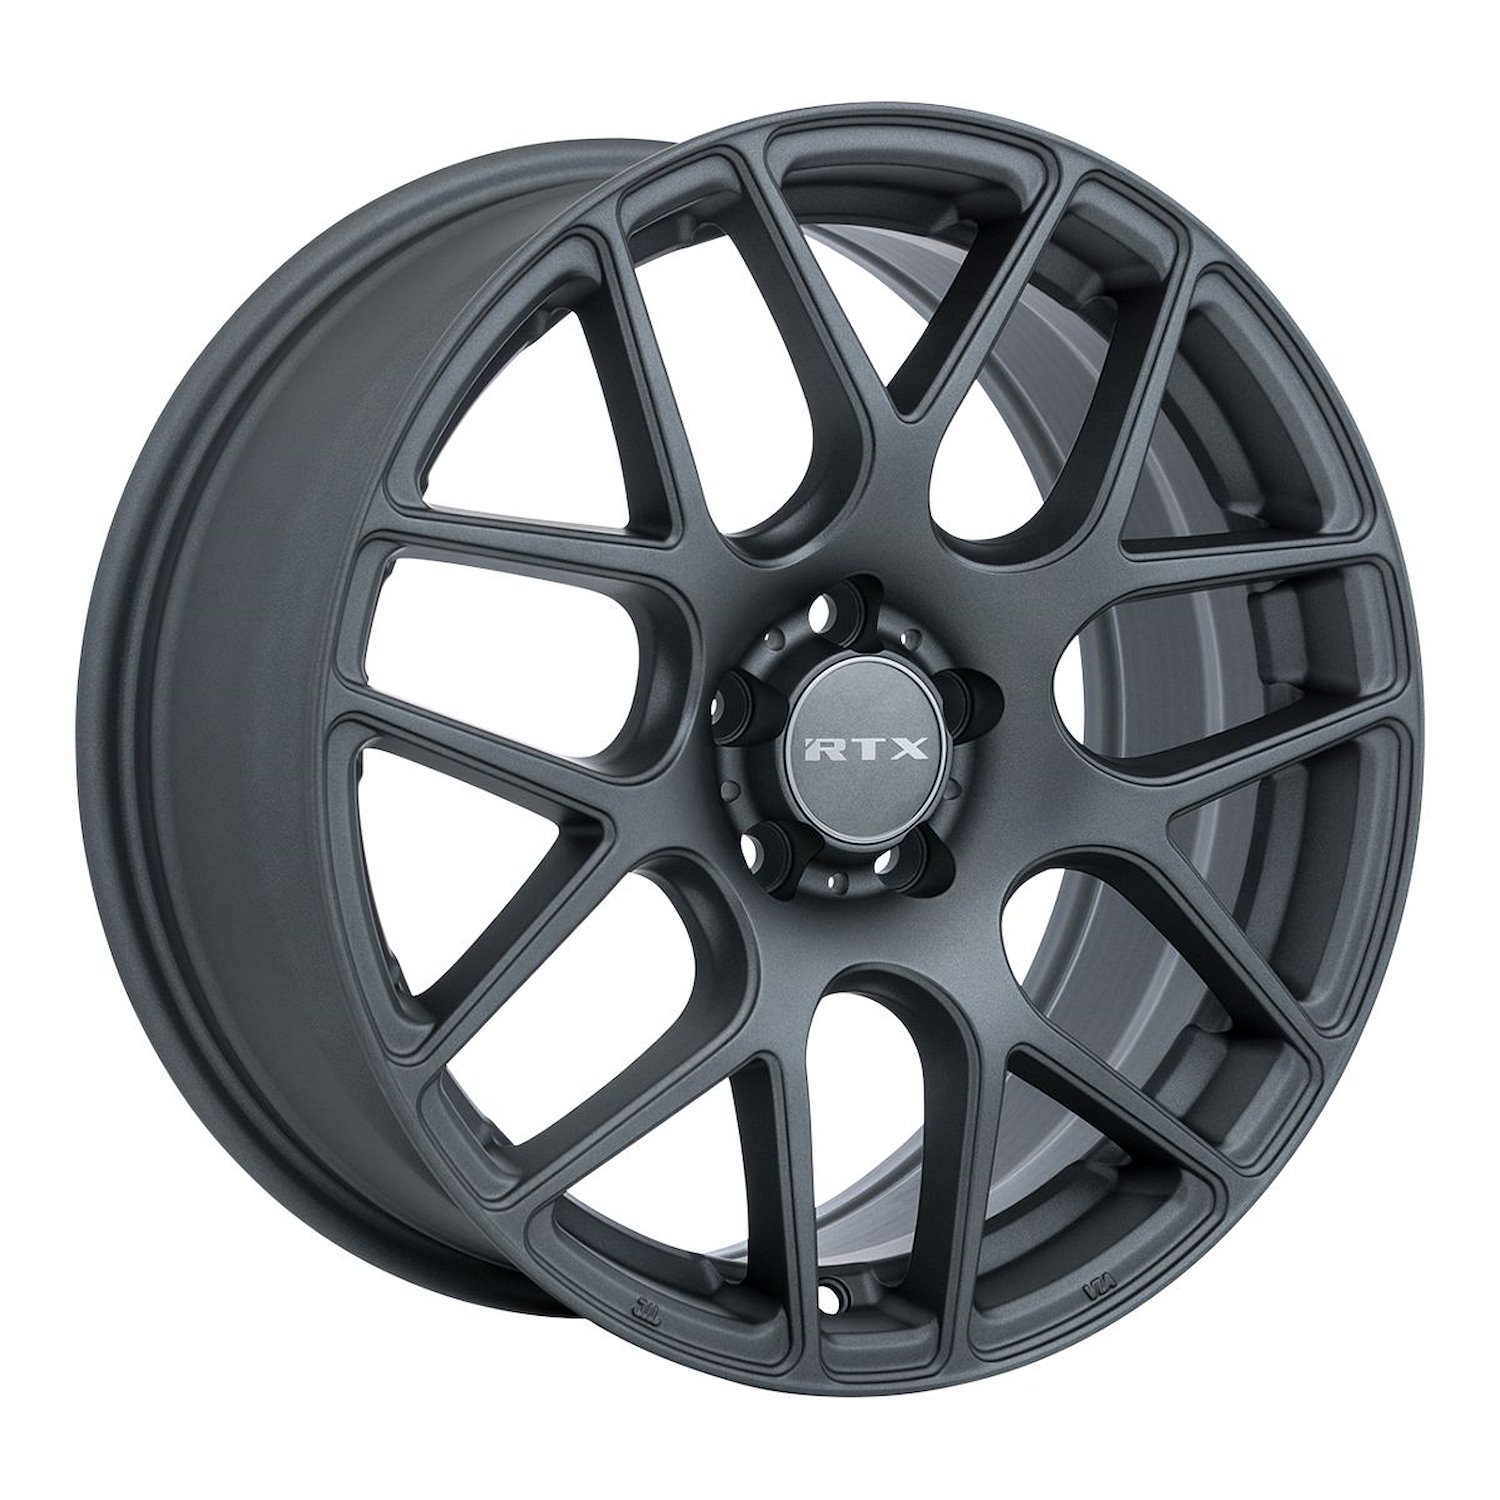 082772 RTX-Series Envy Wheel [Size: 16" x 6.50"] Matte Gunmetal Finish